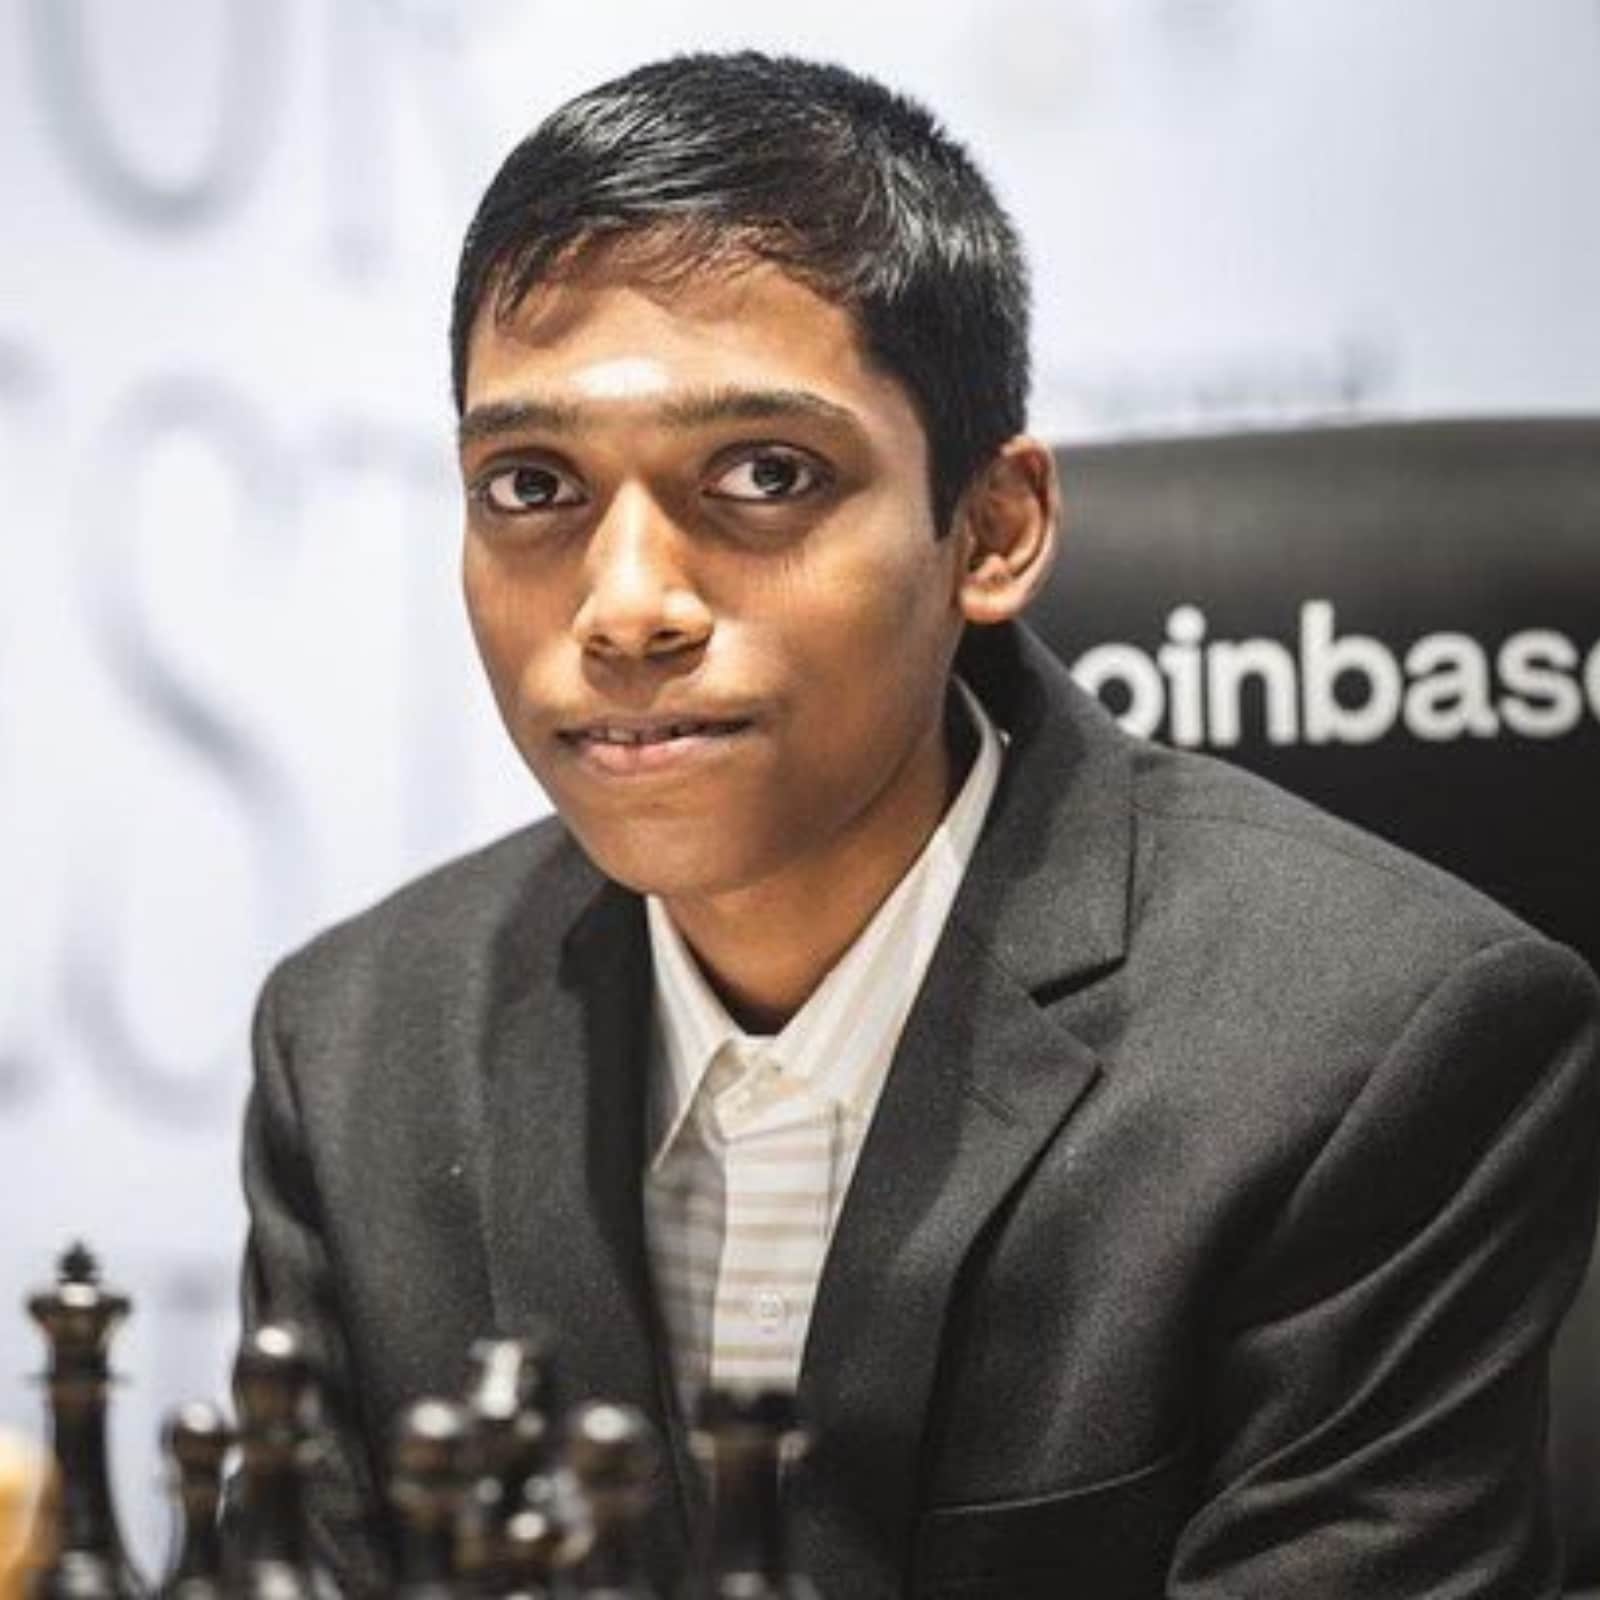 Chess: India's Erigaisi beats Firouzja to set up Carlsen clash